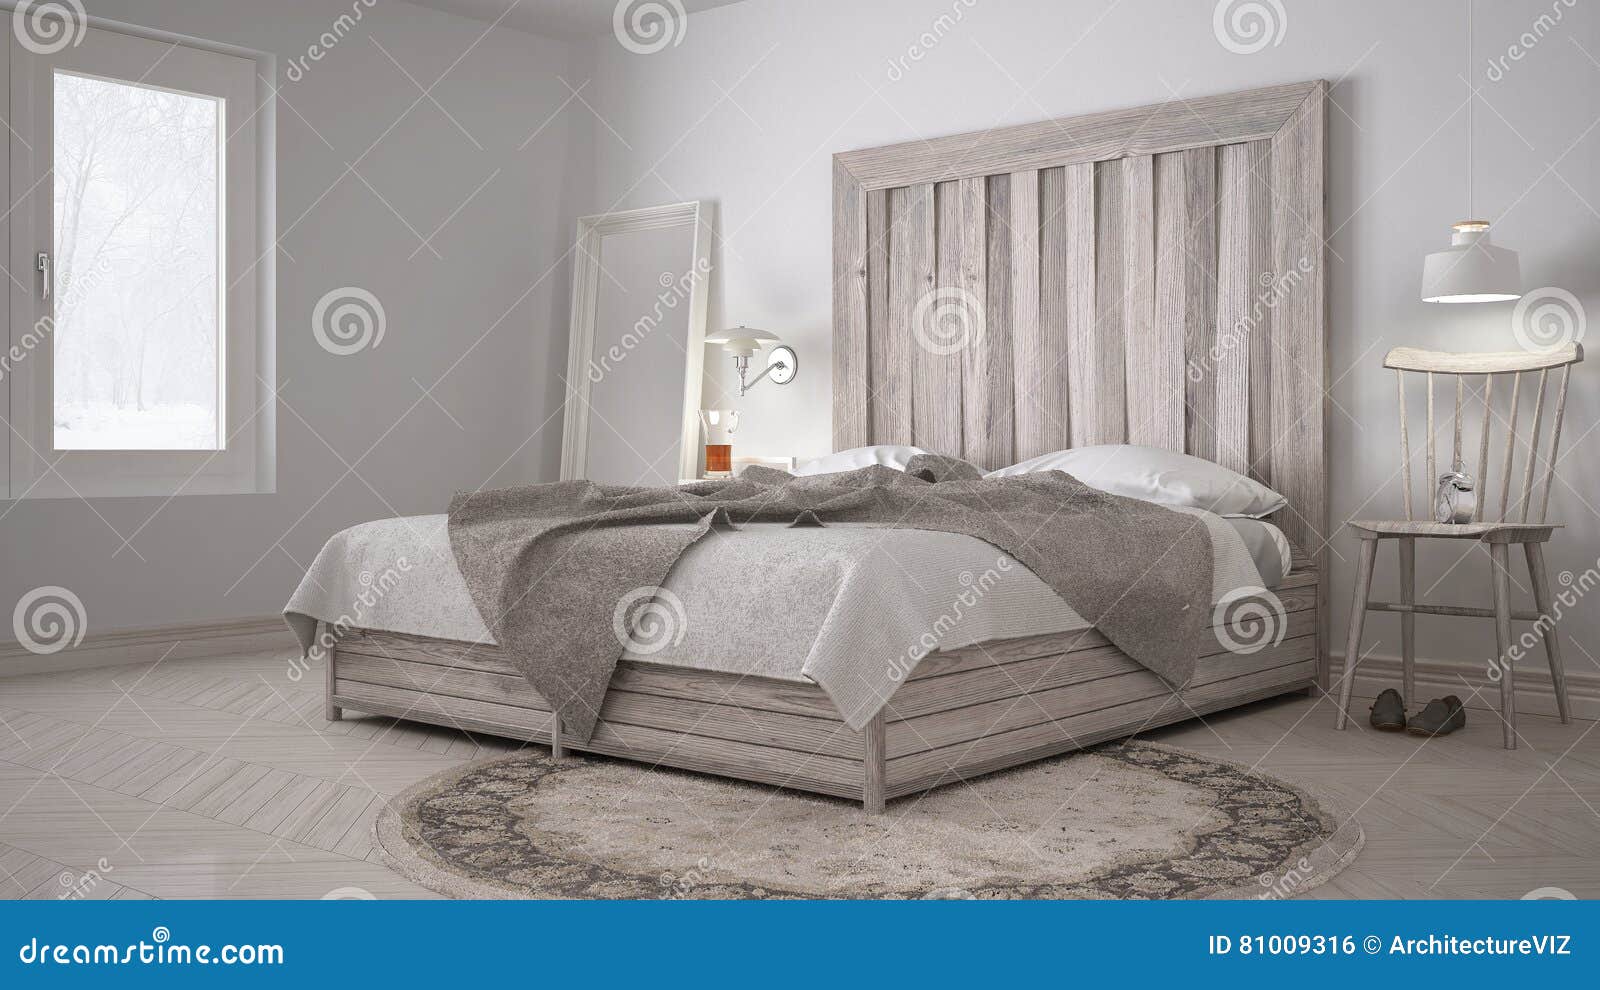 Κρεβατοκάμαρα DIY, κρεβάτι με ξύλινο Headboard, Σκανδιναβικό άσπρο Eco γ  Στοκ Εικόνες - εικόνα από bedroll, lifestyle: 81009316